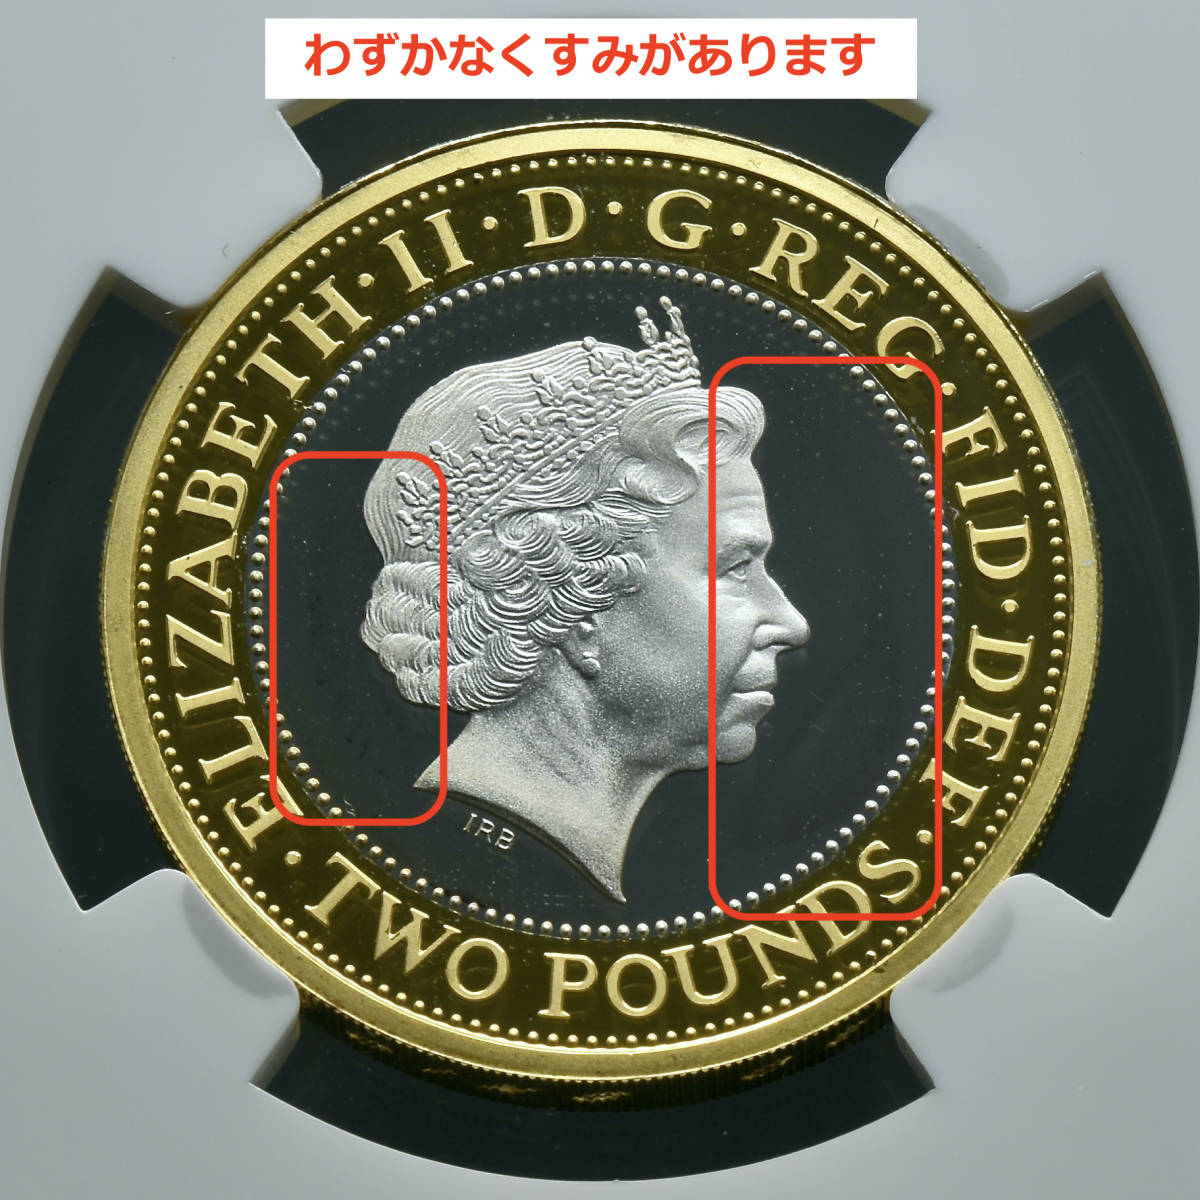 【ピエフォー 倍厚】2014年 第一次世界大戦100周年記念 銀貨 金 英国陸軍 イギリス ロイヤルミント エリザベス2世 NGC アンティークコインの画像9